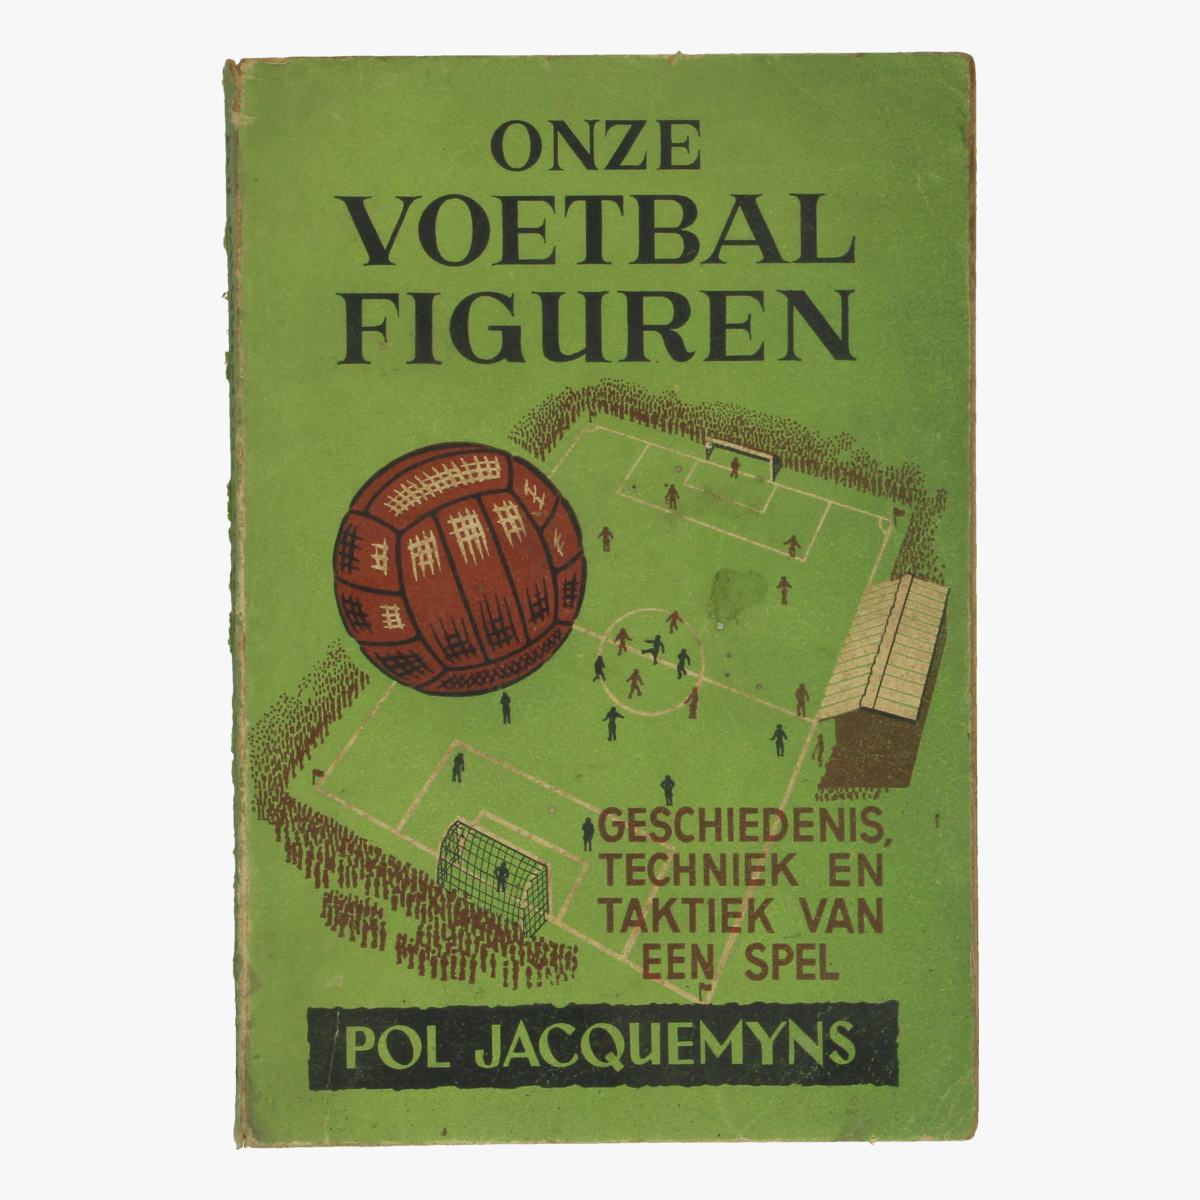 Afbeeldingen van voetbal boek 1942 onze voetbal figuren geschiedenis, techniek en taktiek van een spel pol jacquemyns